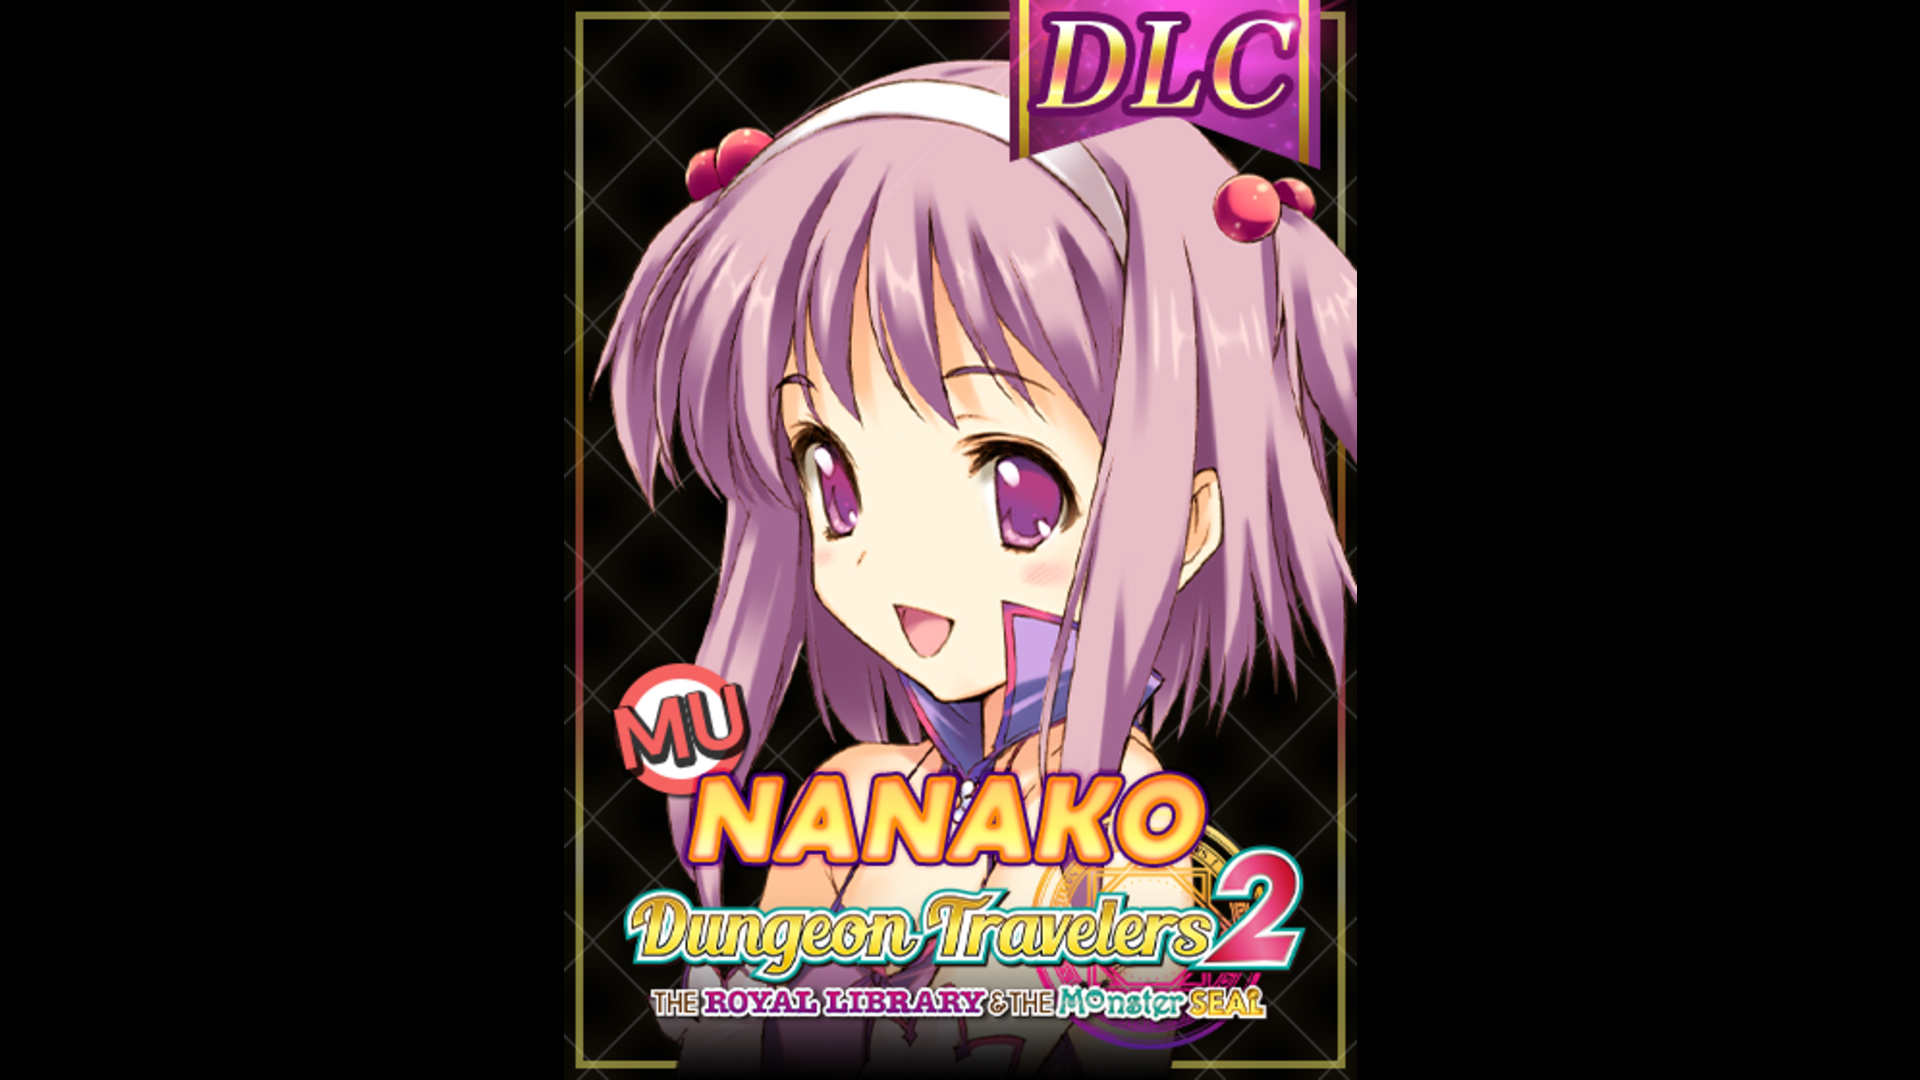 DLC - To Heart 2 Character: Magic User Nanako (Dungeon Travelers 2) - RPG - 1